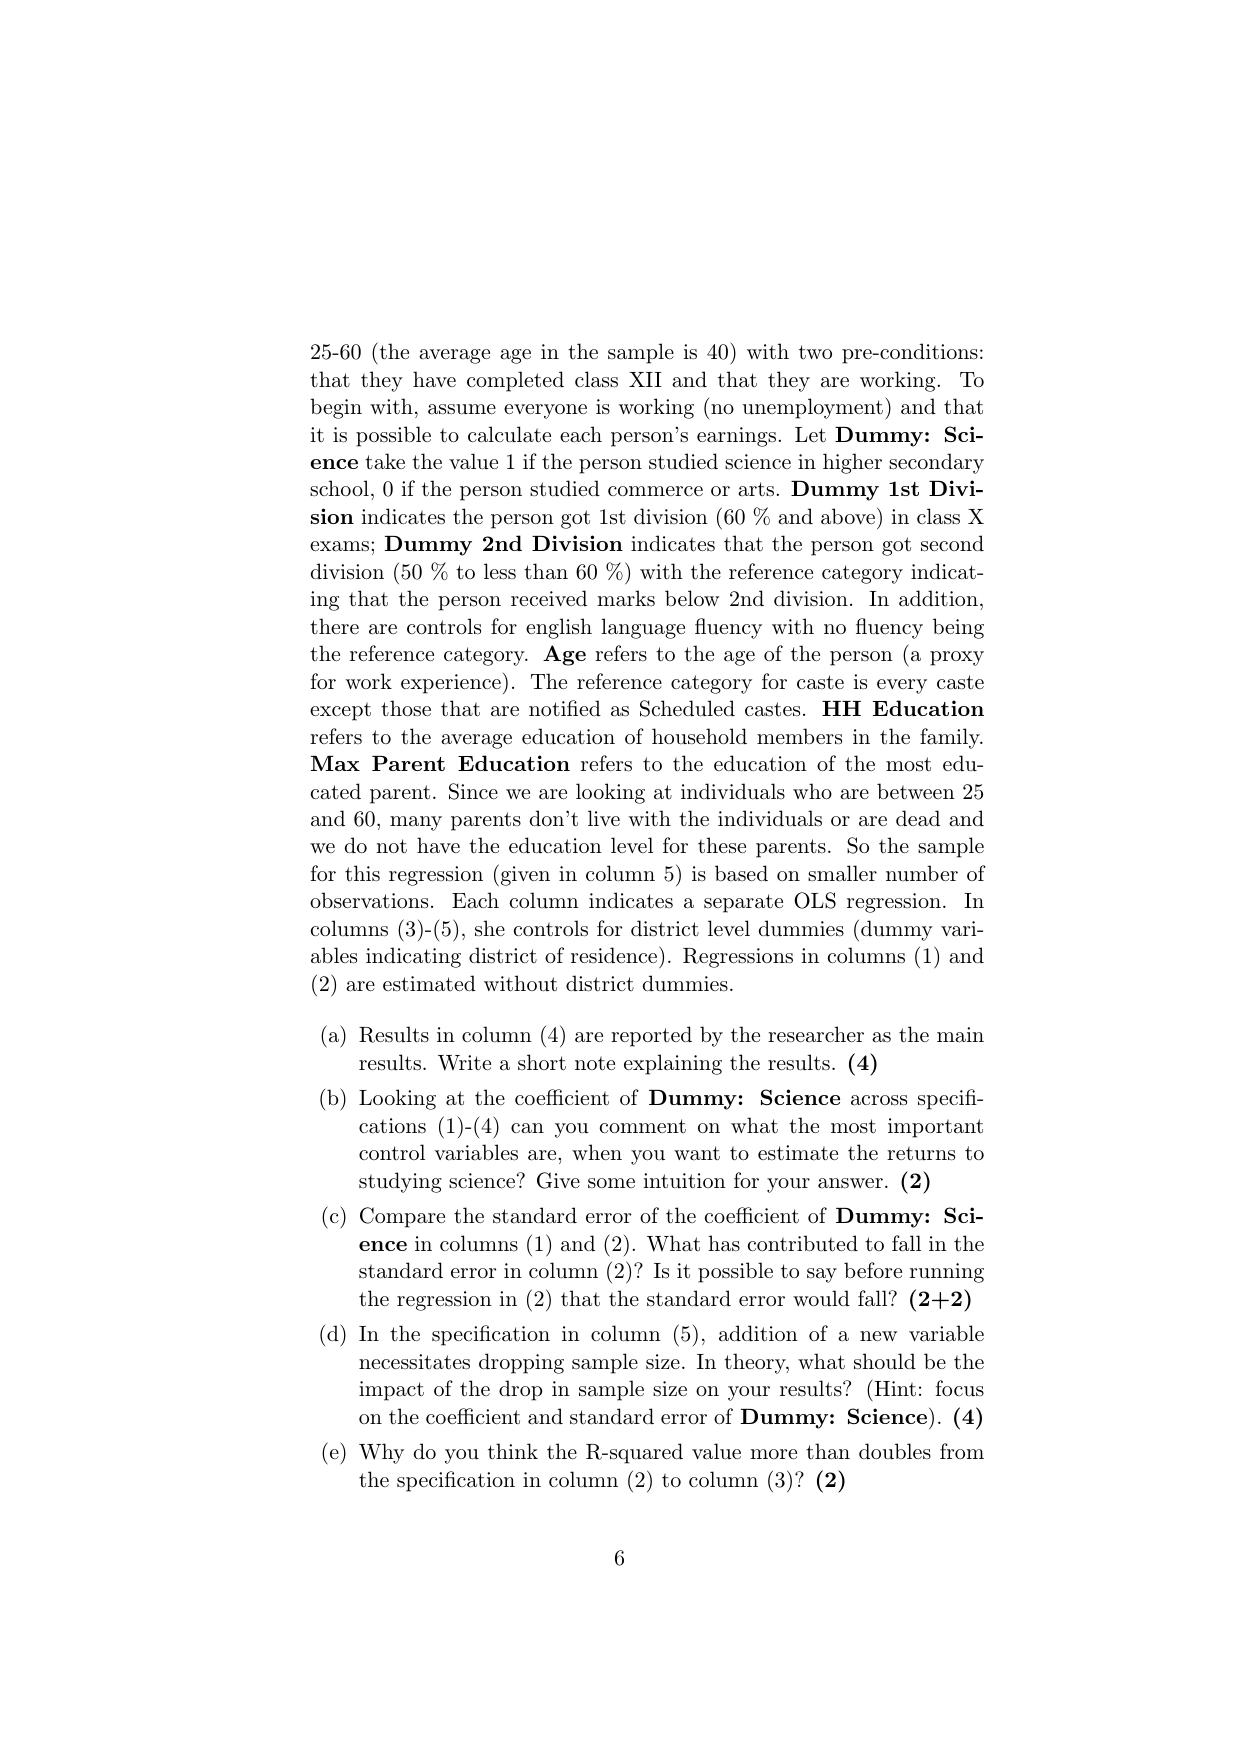 ISI Admission Test JRF in Quantitative Economics QEB 2019 Sample Paper - Page 6